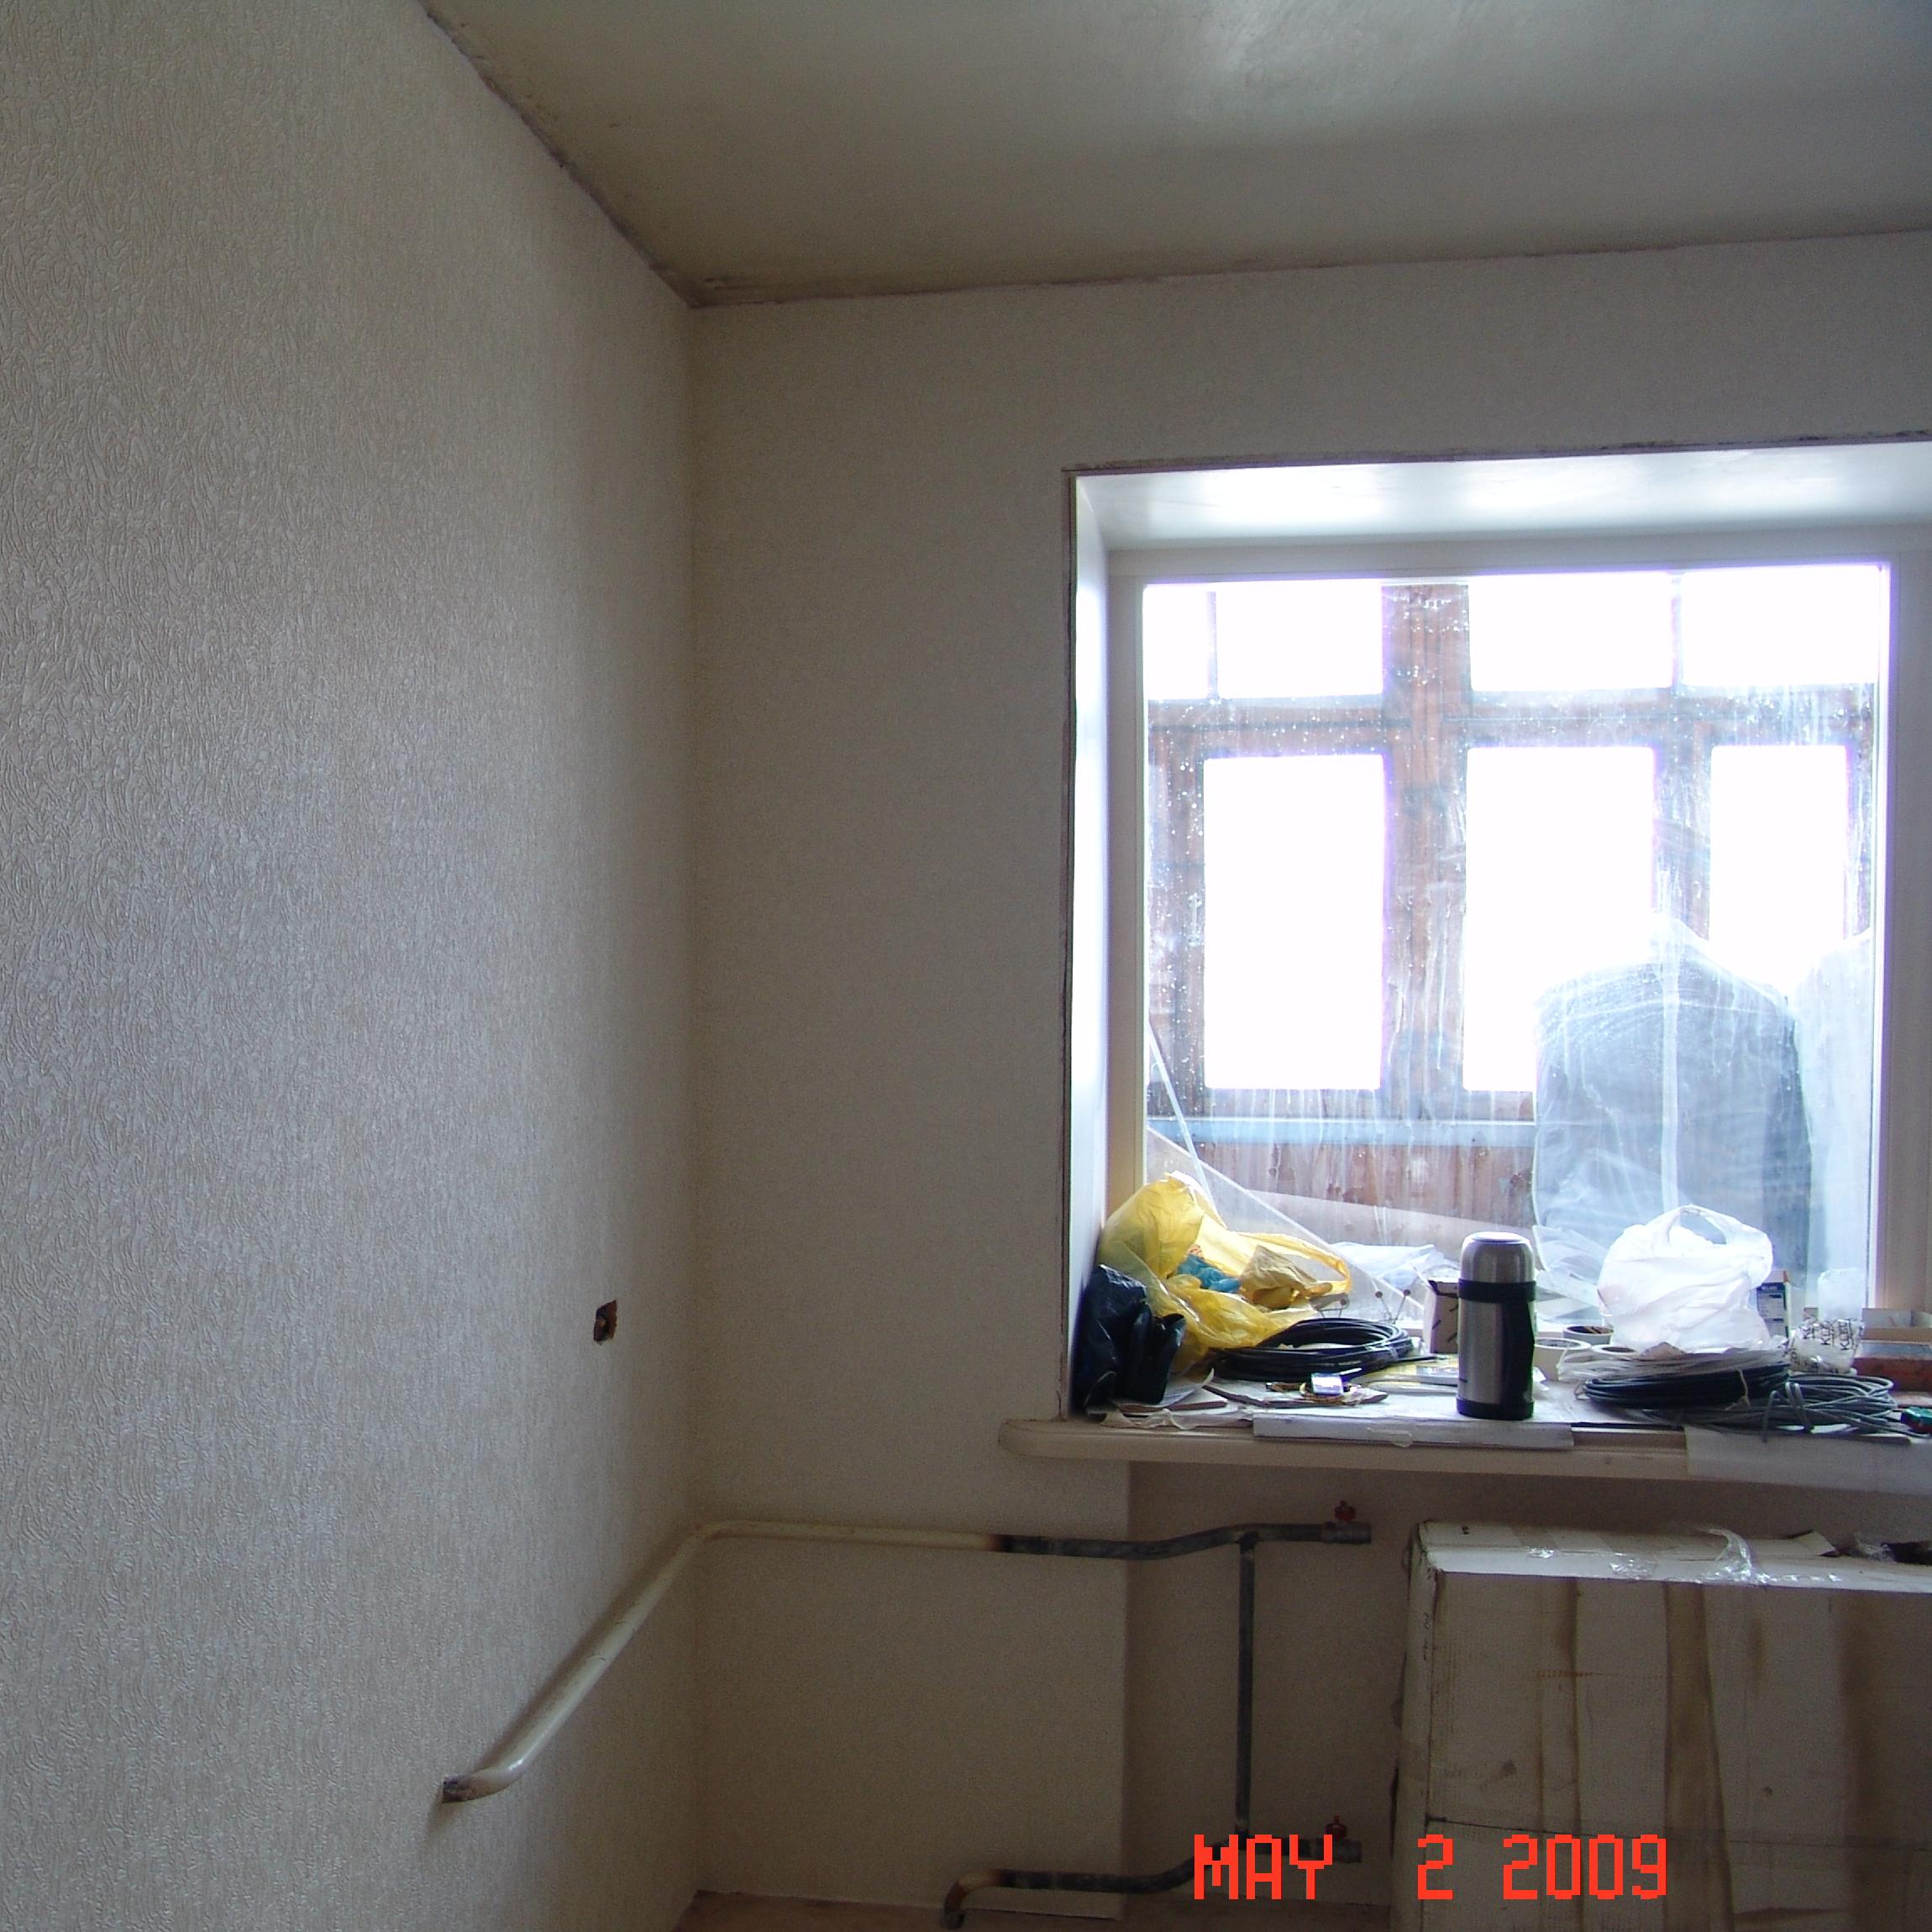 Ремонт тех комнатной квартиры под ключ на ул. Петра Словцова, 8 в Красноярске